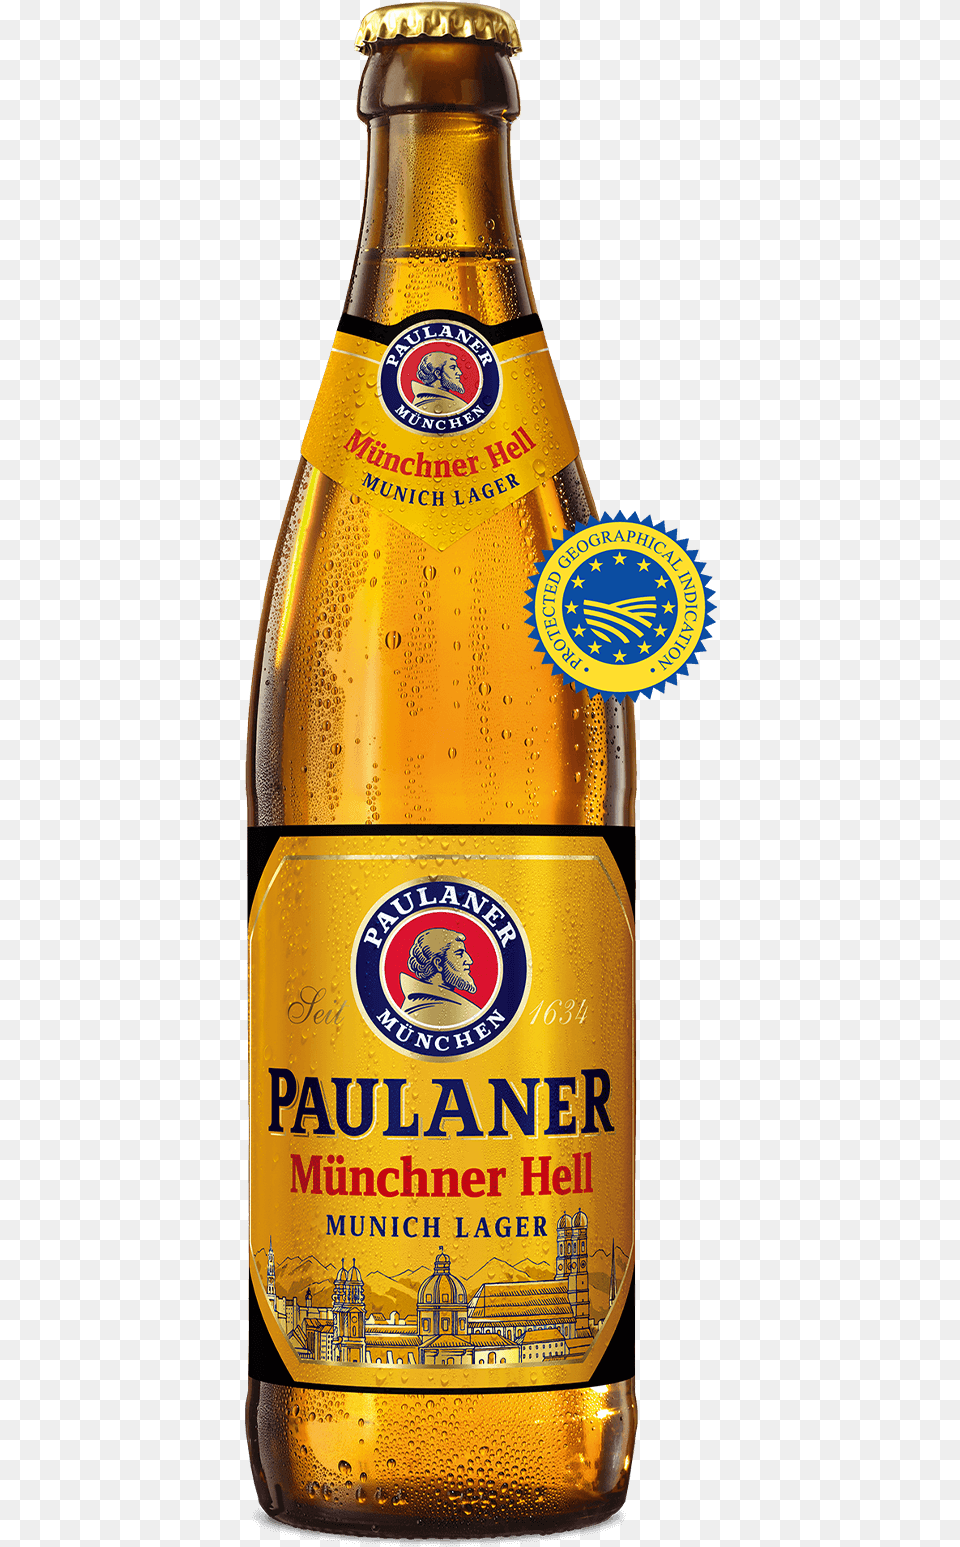 Paulaner Munchner Hell, Alcohol, Beer, Beer Bottle, Beverage Free Png Download